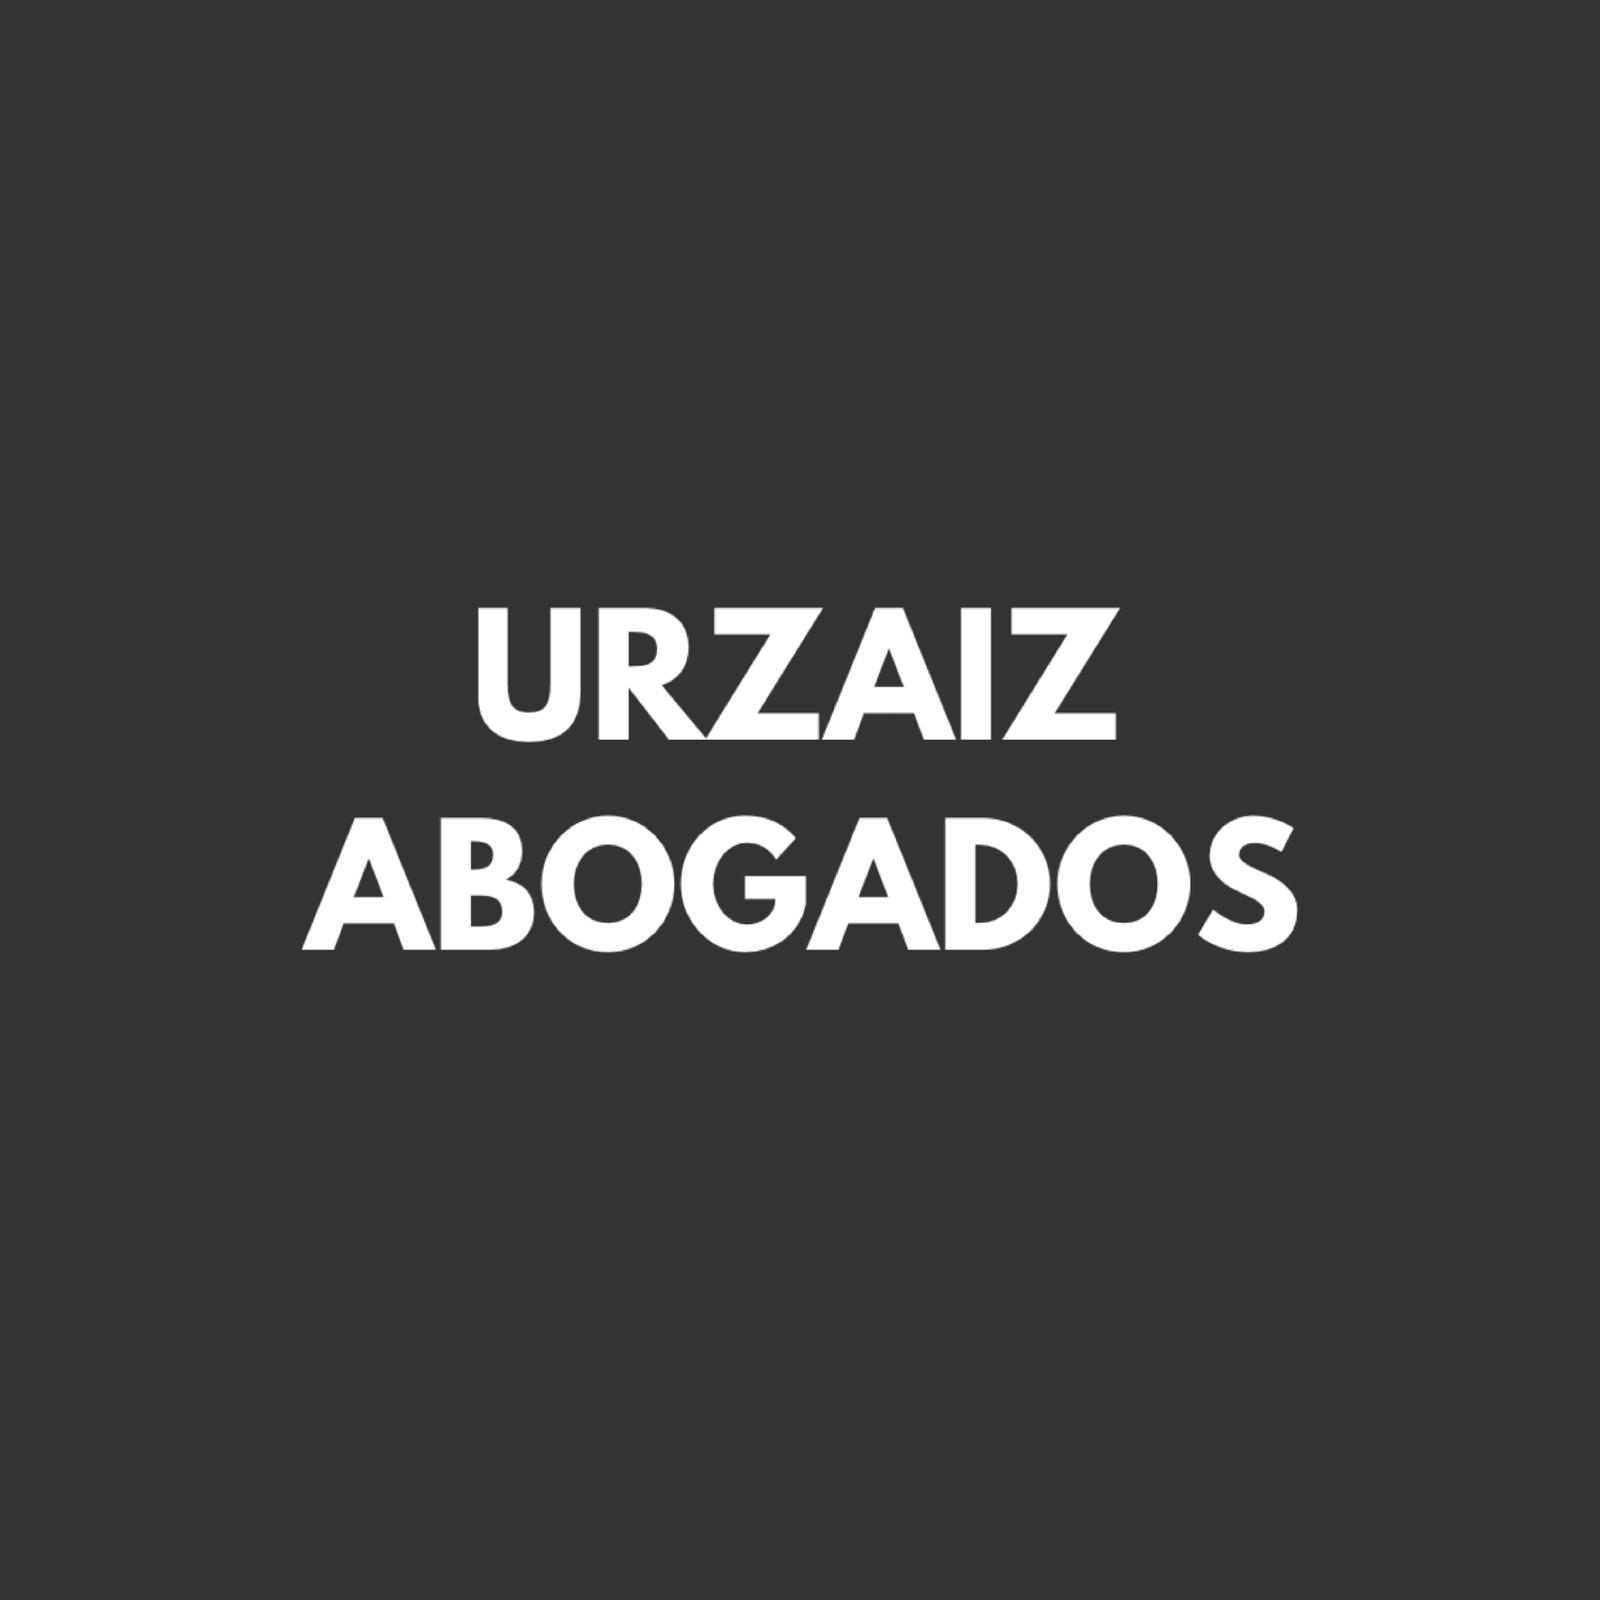 UrzaizAbogados -Abogados de Tarragona